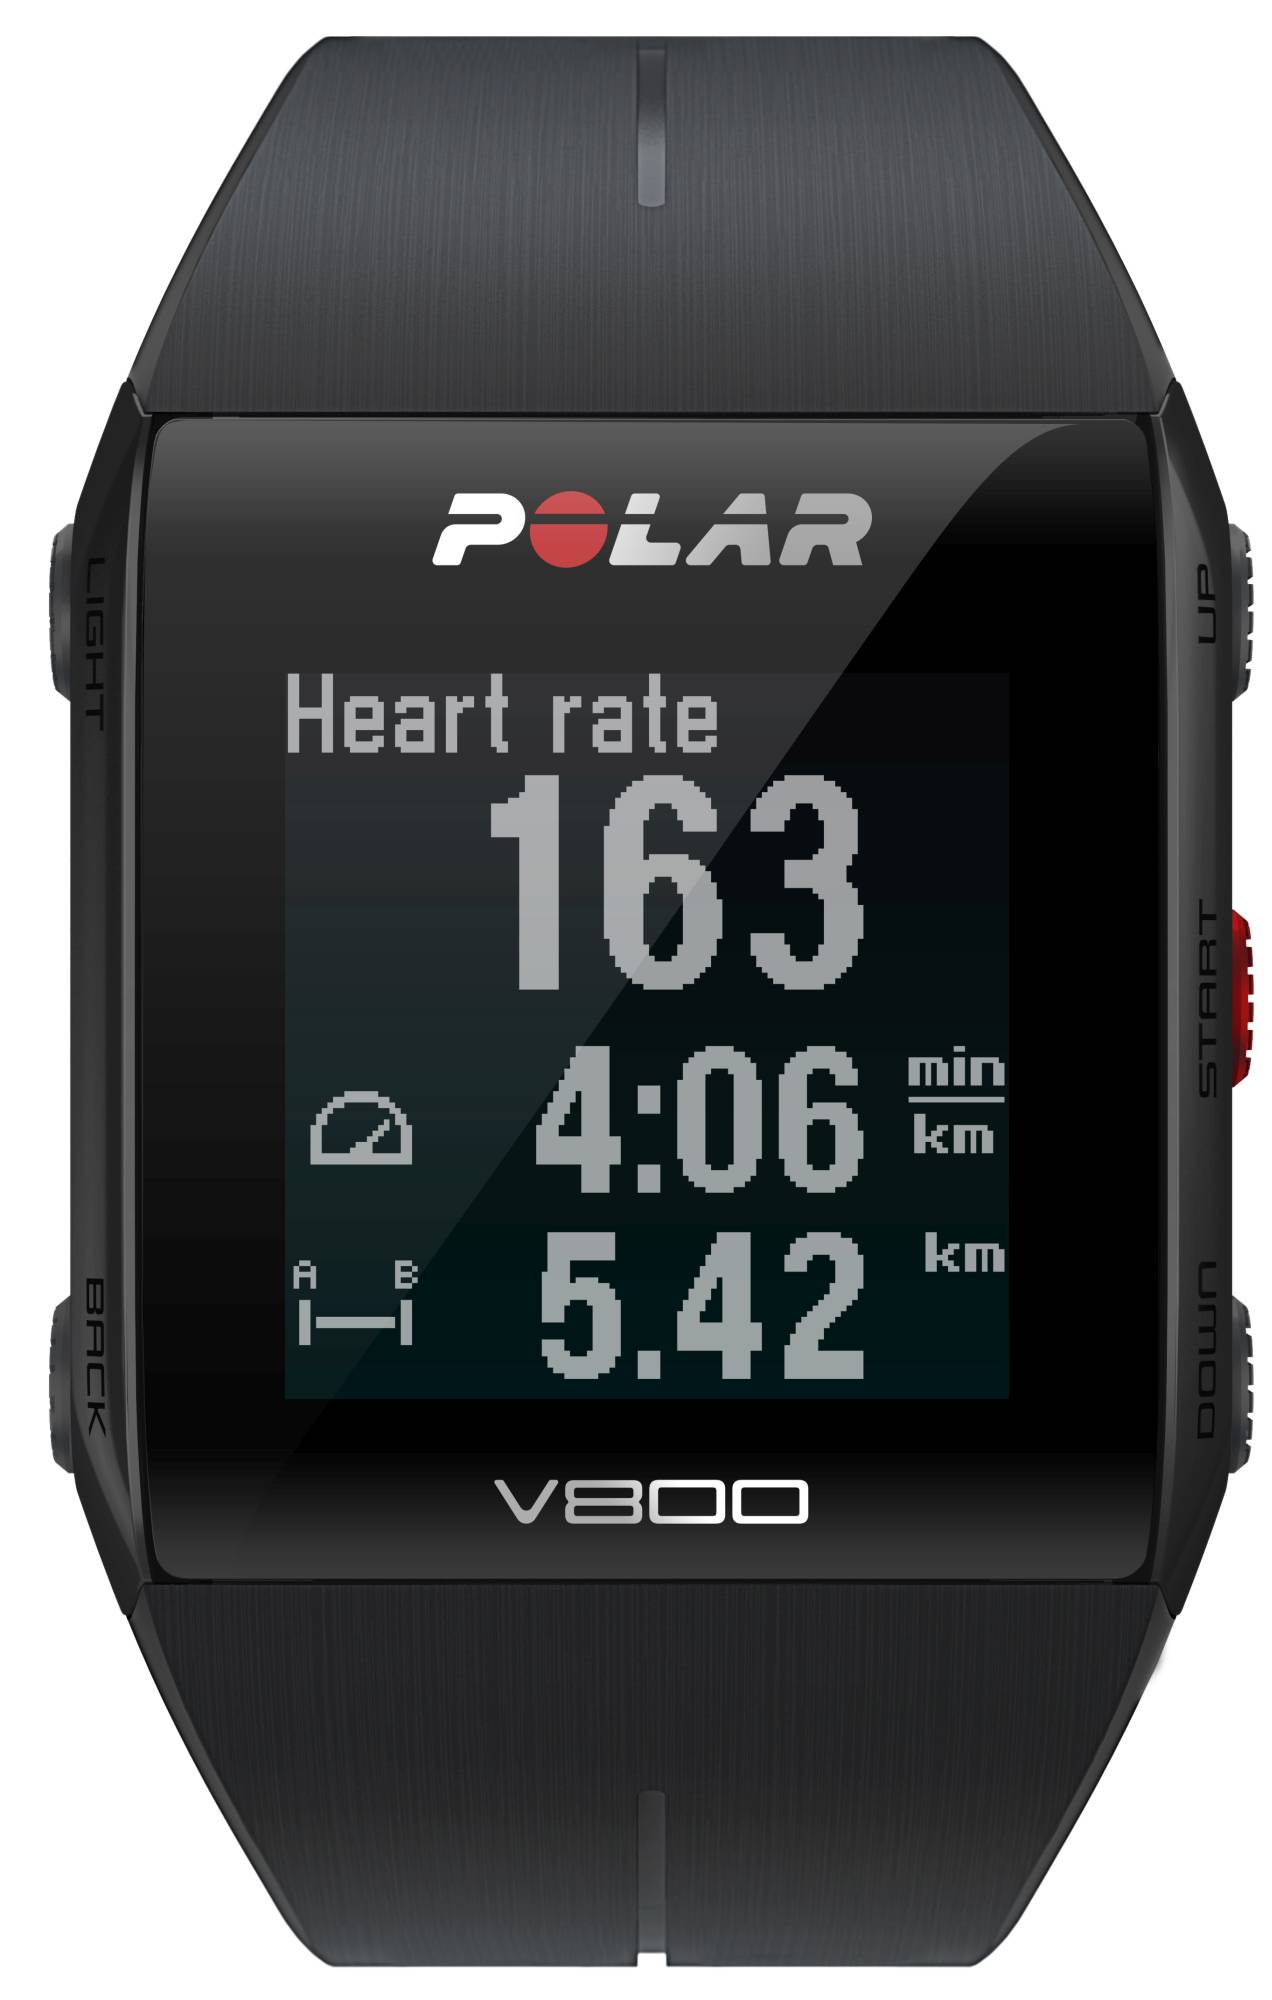 Športové hodinky s GPS